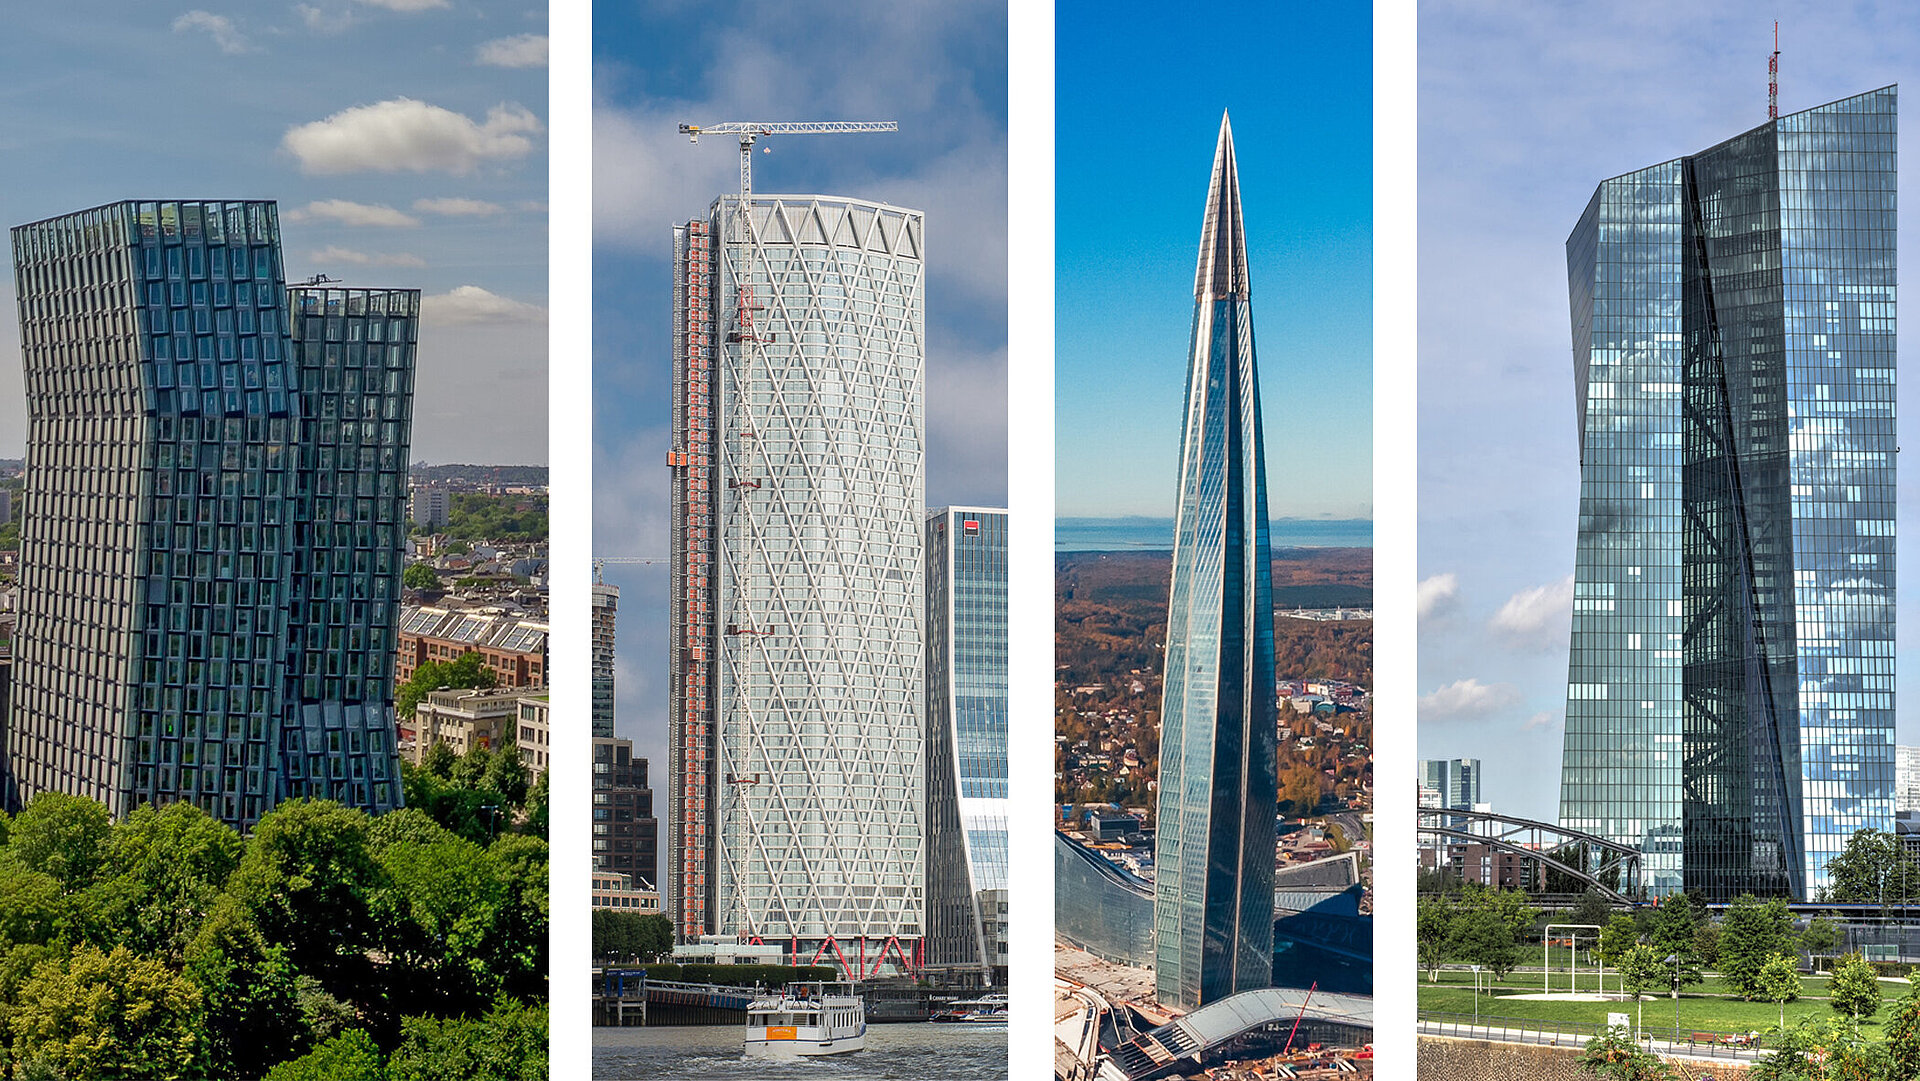 Auf vier Bildern sind Hochhäuser mit Glasfassaden weltweit unter Beteiligung des ift Rosenheim zu sehen.